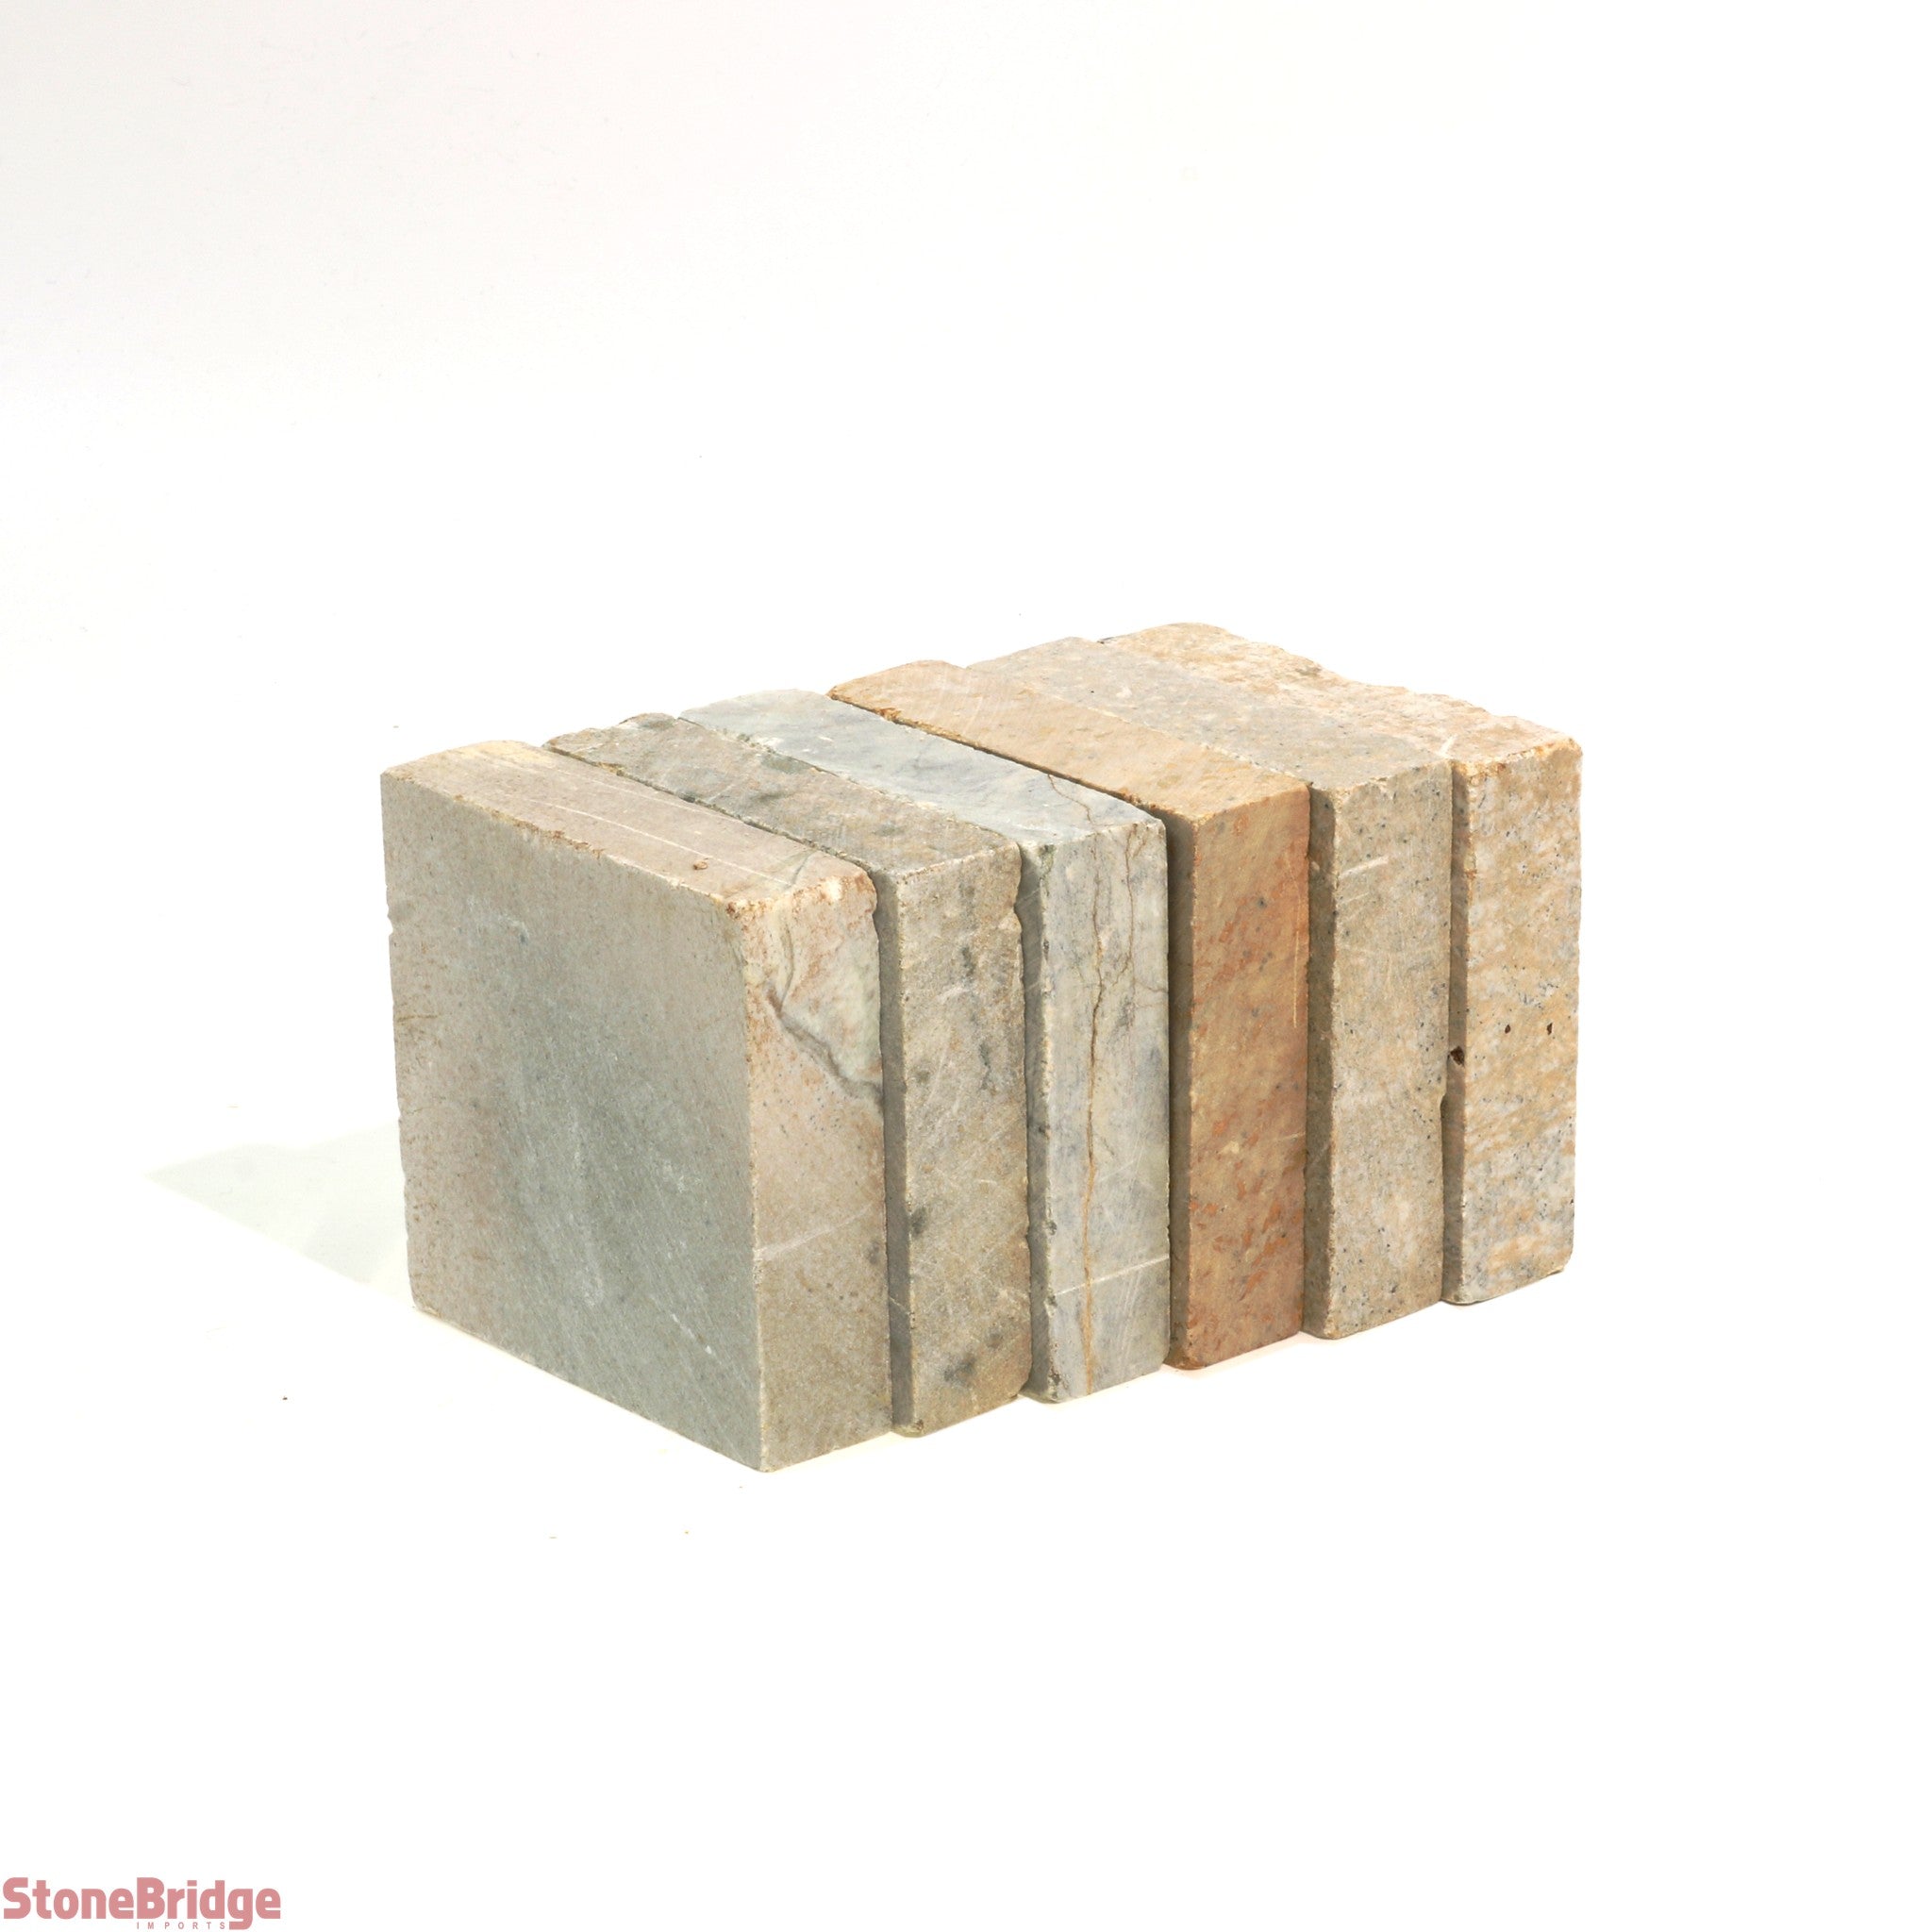 StoneBridge Beginner's Soapstone Carving Block - Make Your Own 3D